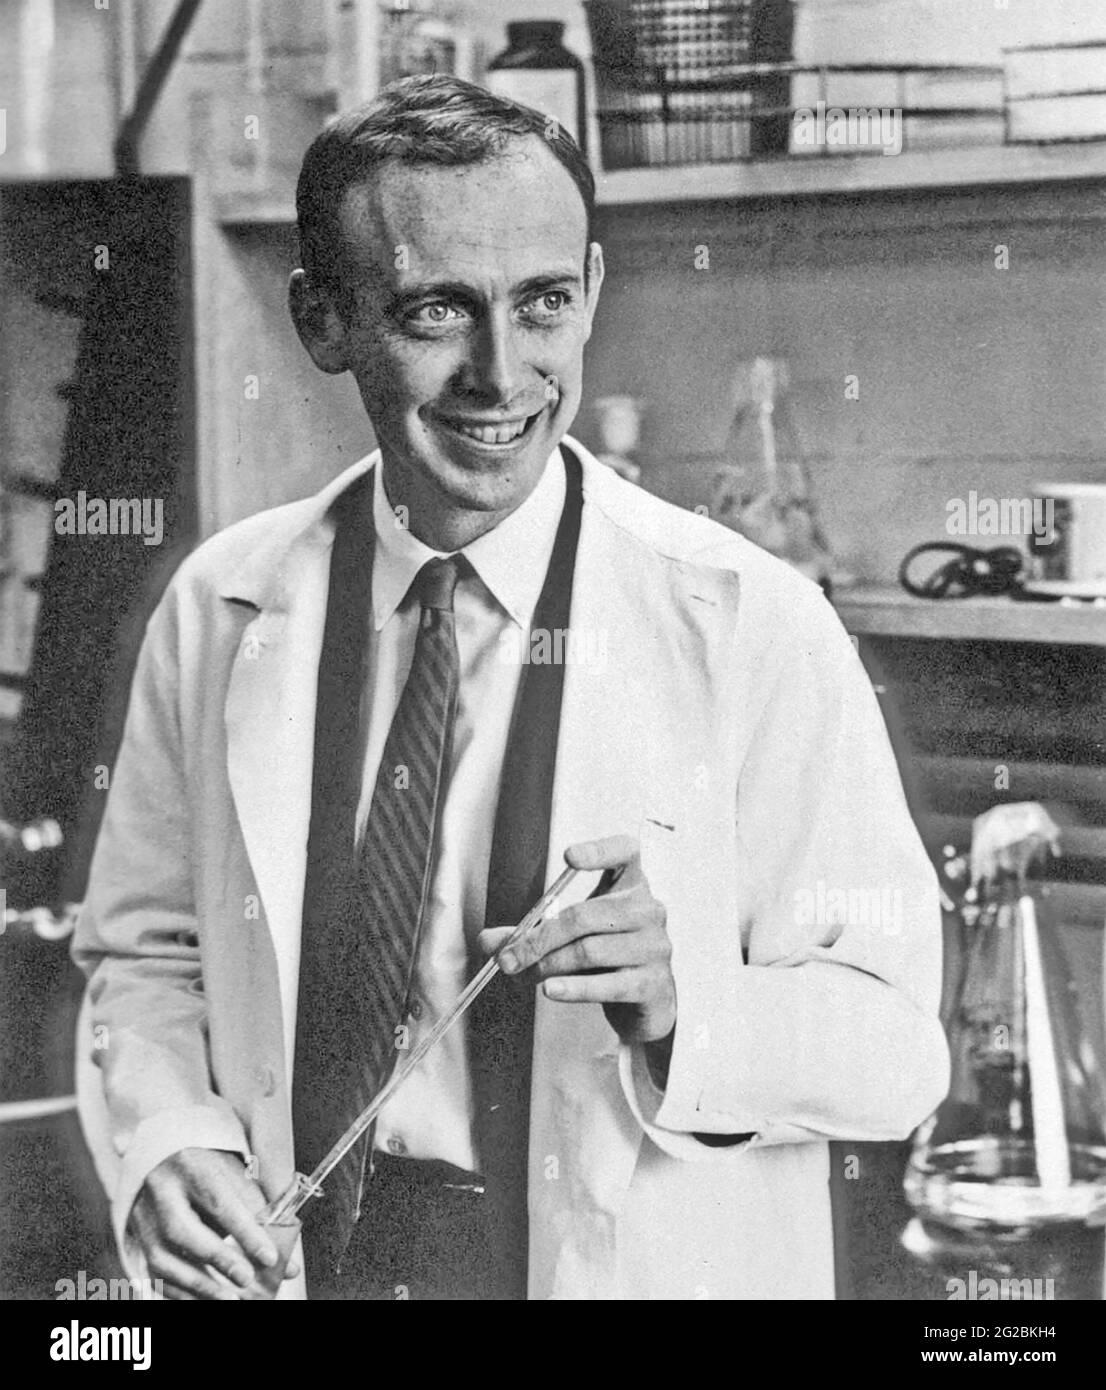 JAMES WATSON Biologiste moléculaire américain et généticien co-auteur avec Francis Crick l'article proposant la structure à double hélice de la molécule d'ADN. Photo sur 1968. Banque D'Images